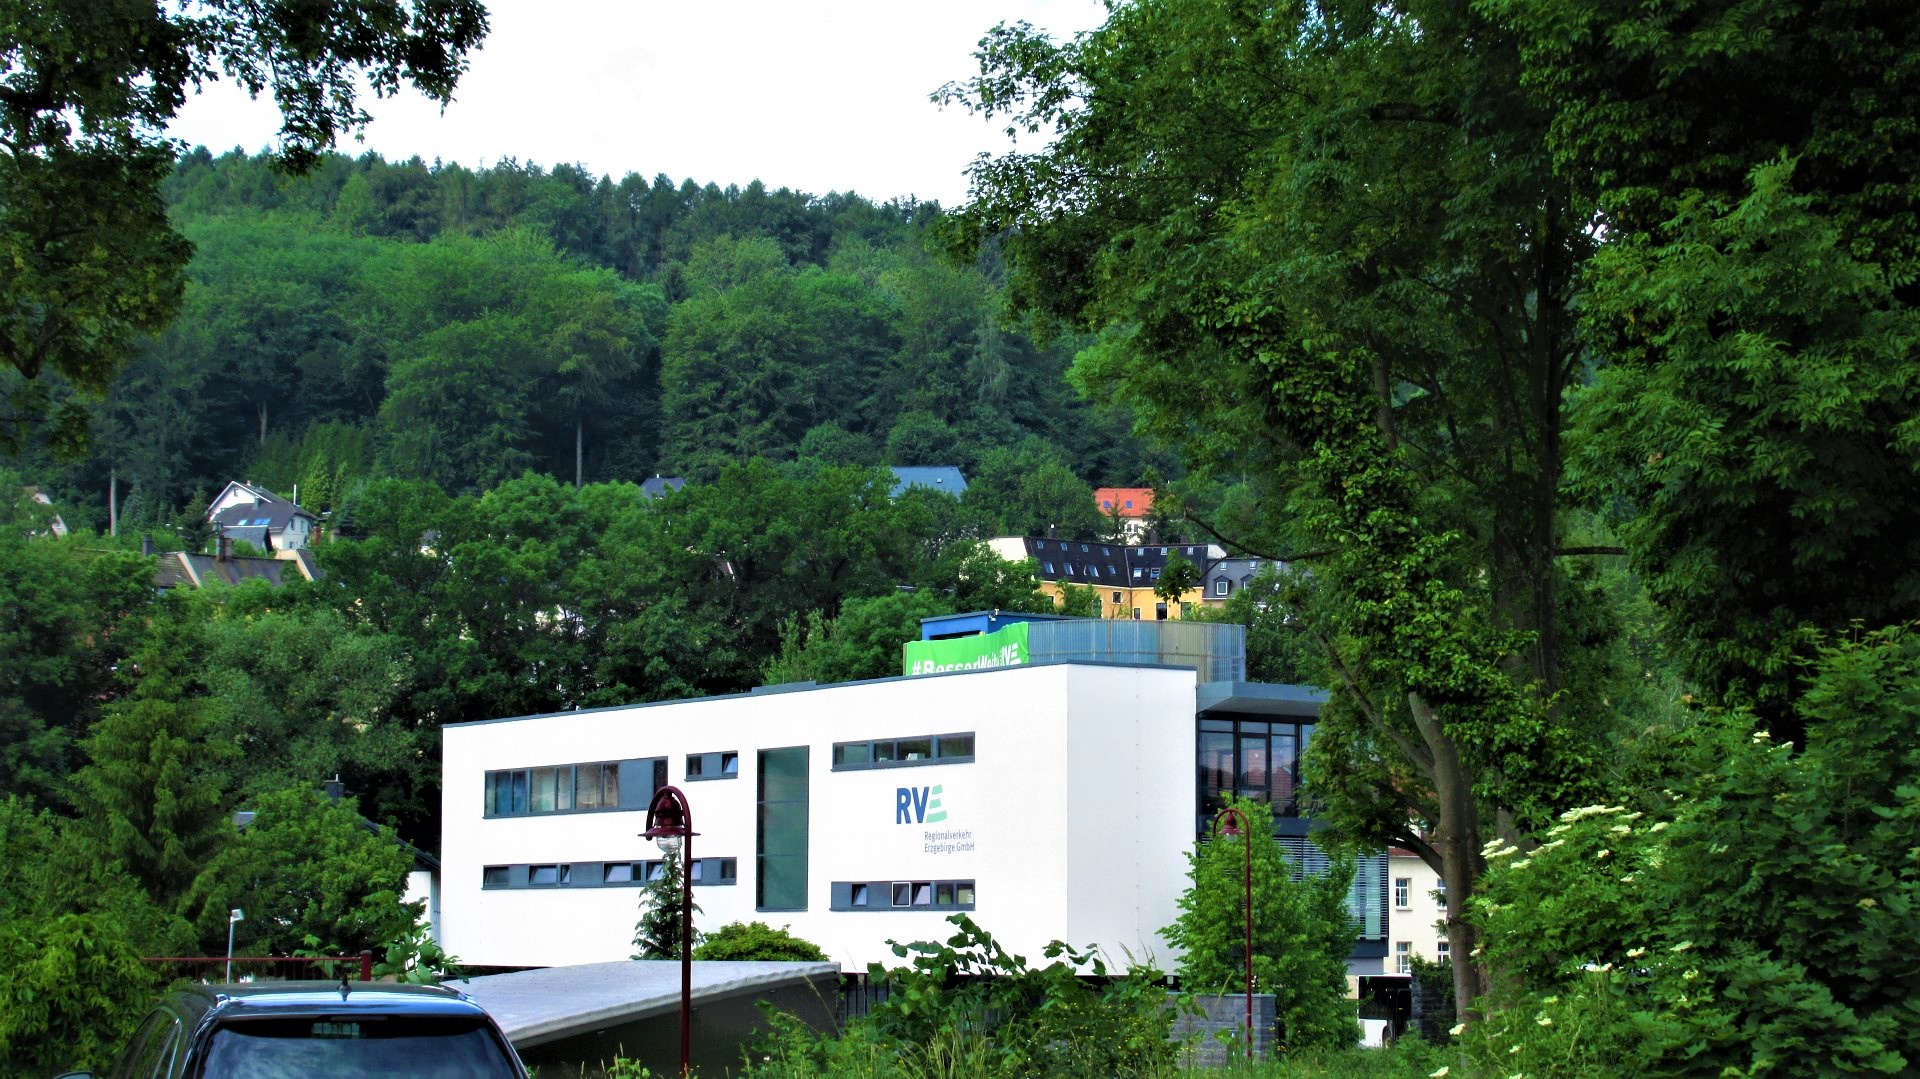 Bild 1 Regionalverkehr Erzgebirge GmbH Niederlassung in Aue-Bad Schlema